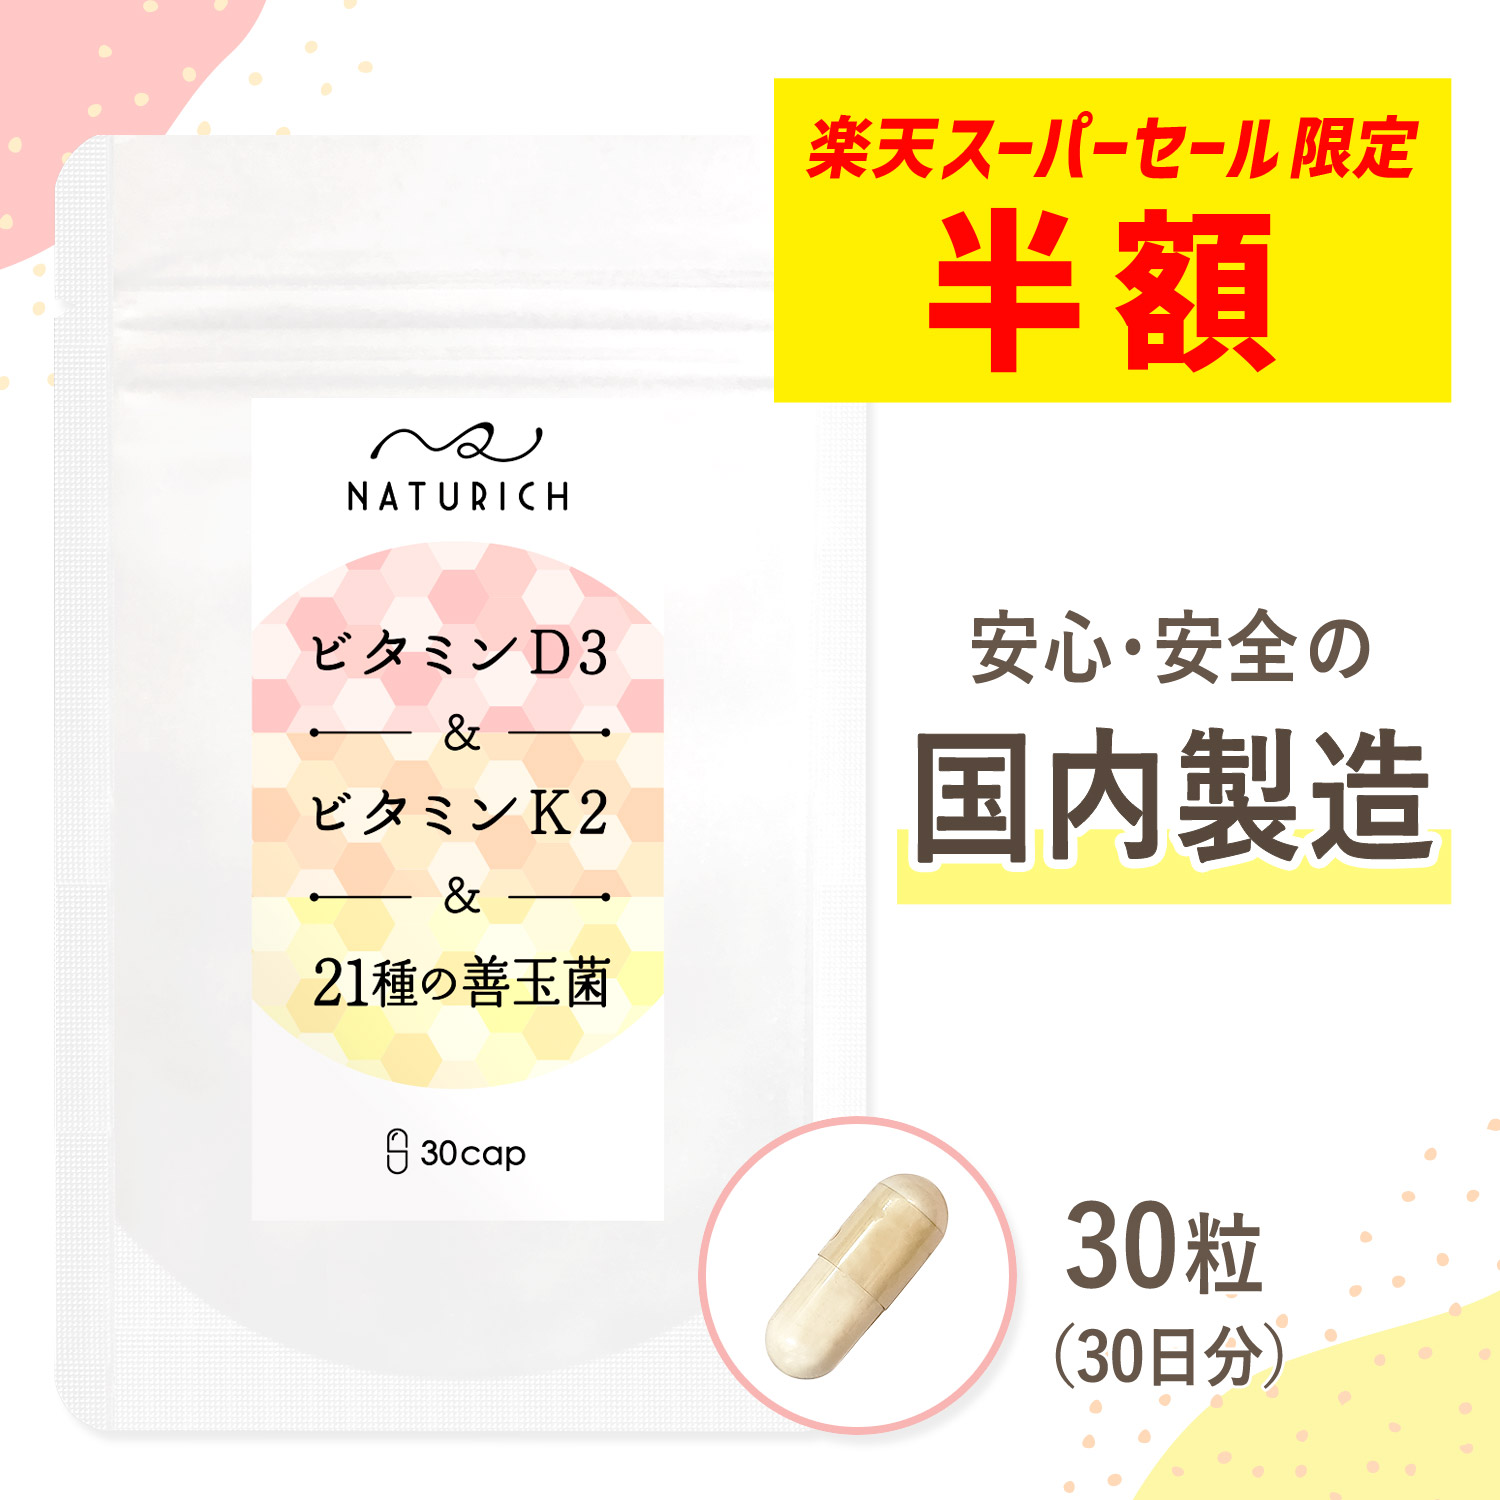 日本最大のブランド 最大43%OFFクーポン ビタミンd サプリメント 1粒に1 200IU 30mcg と高配合 ビタミンk 善玉菌 乳酸菌 ビタミン サプリ 腸活 増やす 腸内環境 女性 健康 ナチュリッチ ビタミンd3 ビタミンk2 21種 ビタミンD ビタミンD3 腸内 フローラ サポート ビタミンサプリ 腸活サプリ ビタミンK2 国内製造 30粒 30日分 Naturich aroundtheworldin1000days.com aroundtheworldin1000days.com